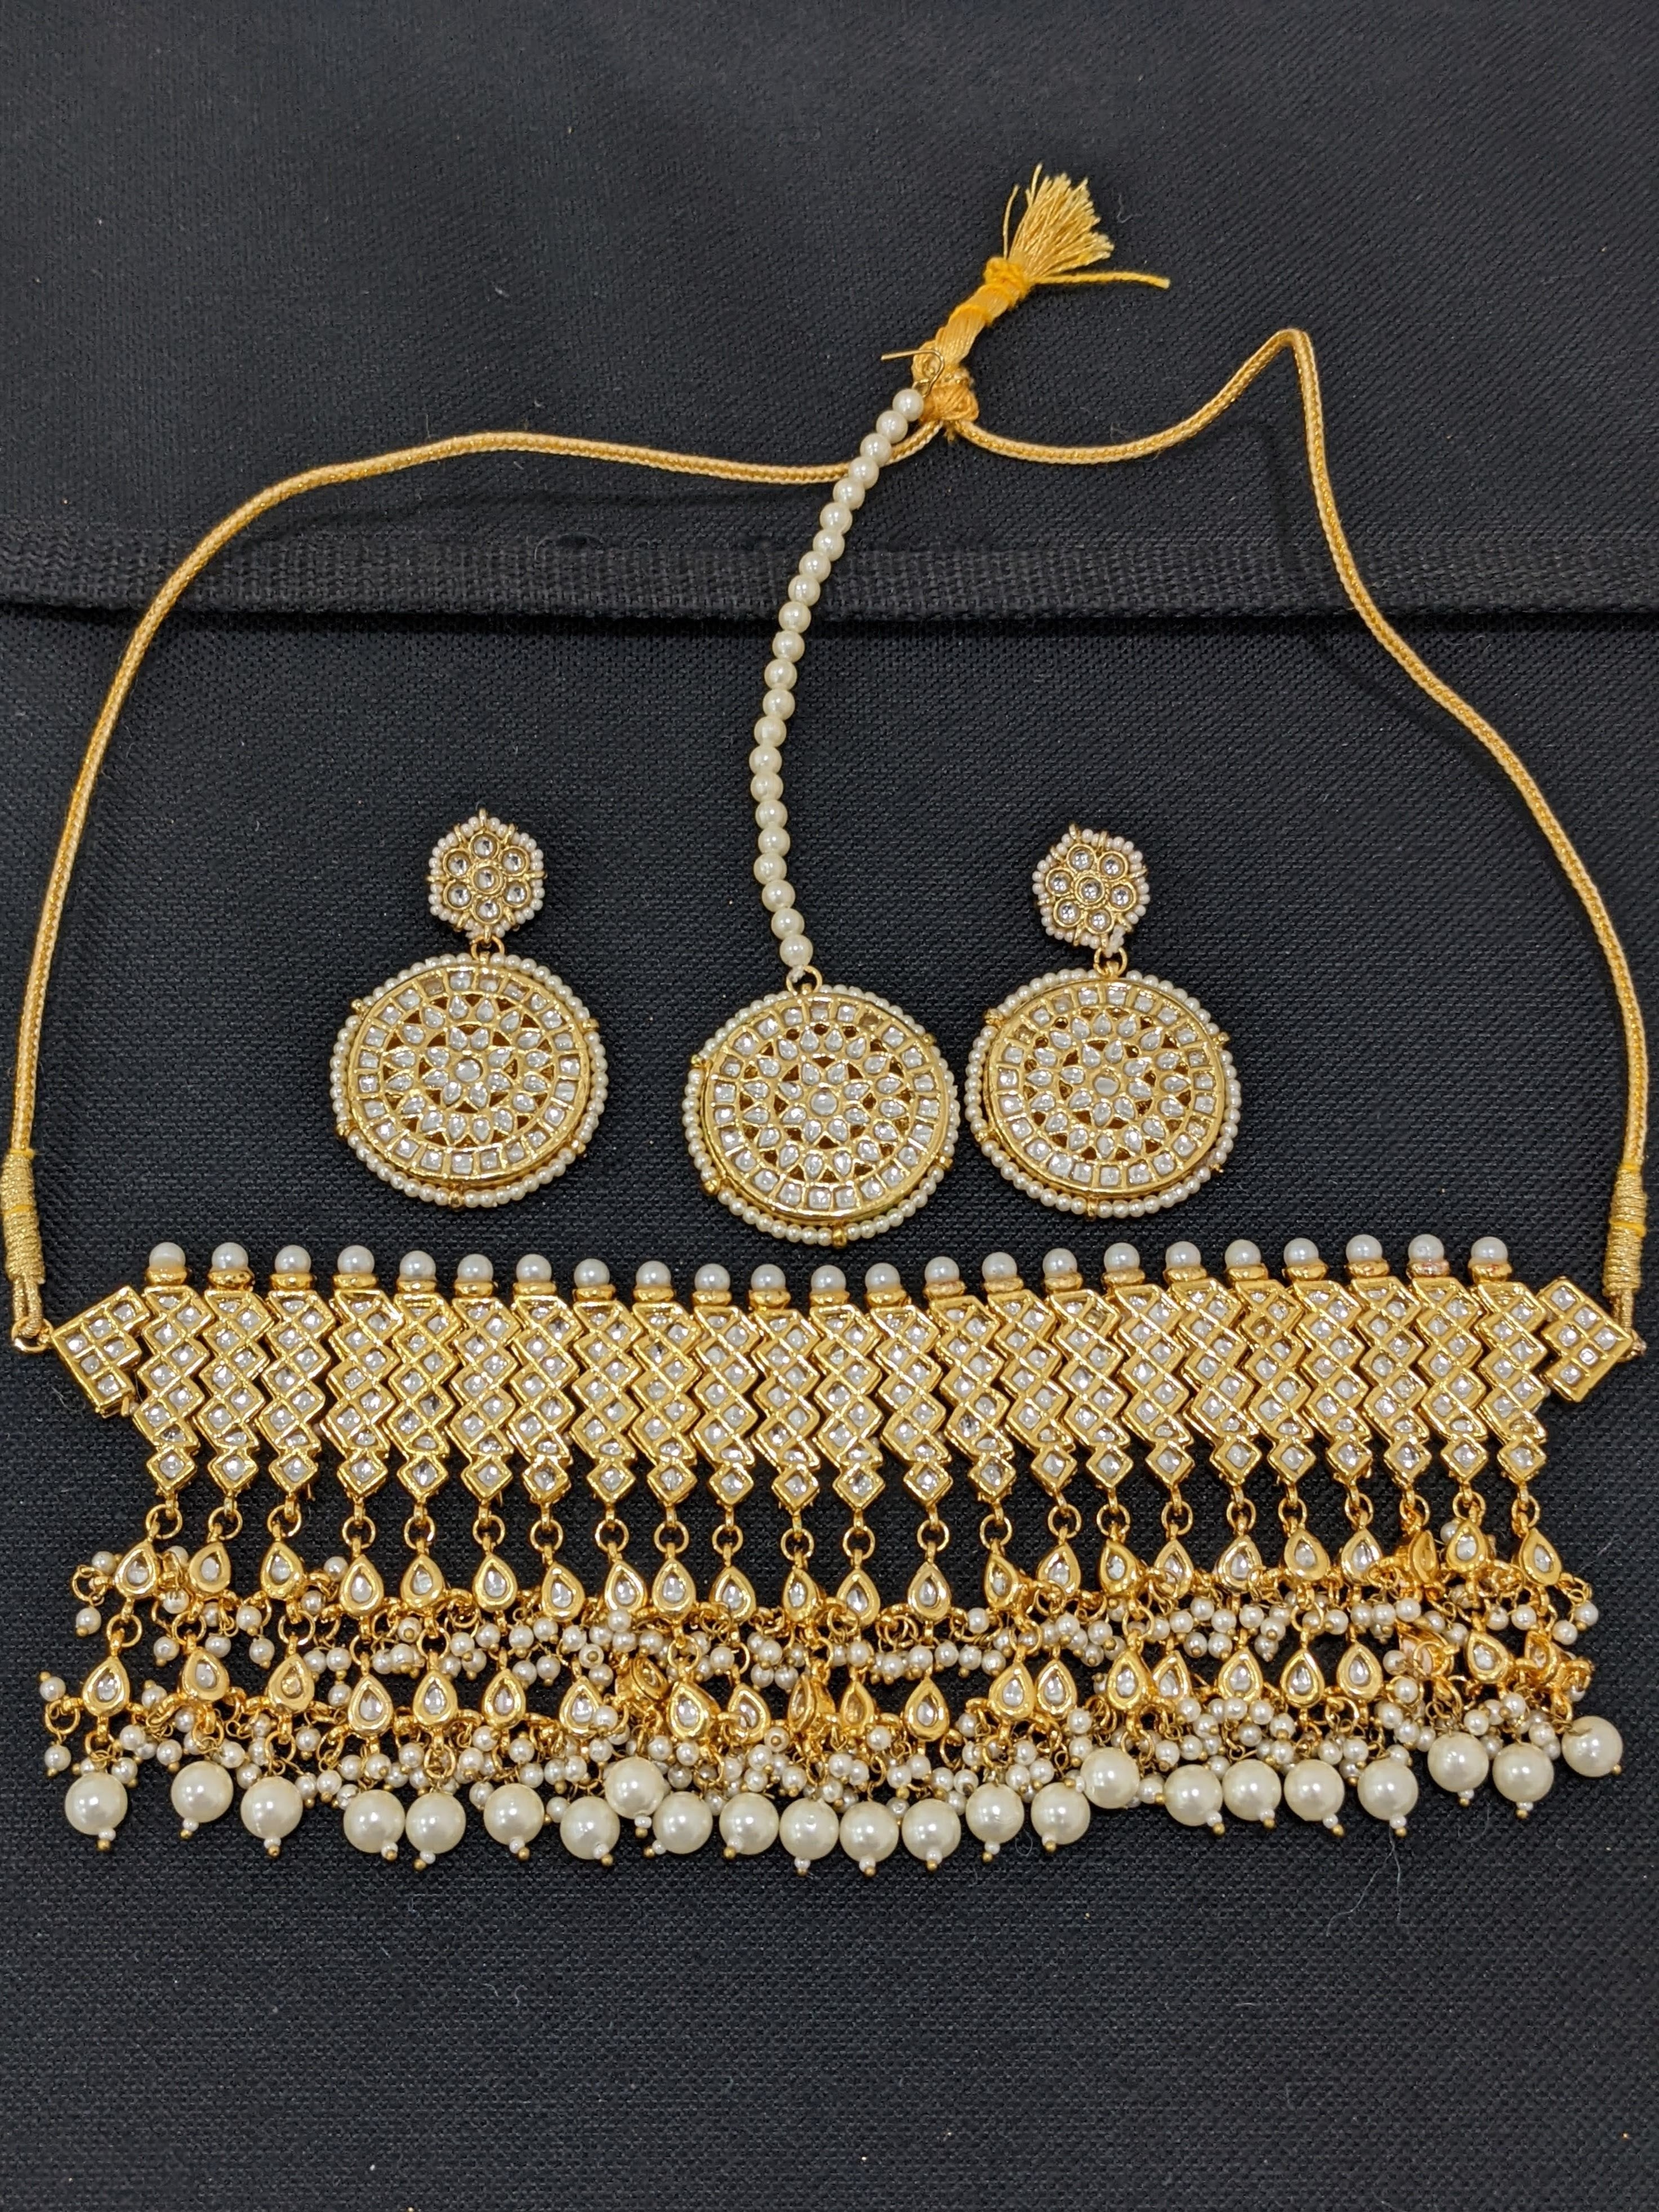 Pakistani Necklace, zircone earrings 22K GOLD JEWELLERY IN DUBAI 22K GOLD  NECKLACE SET 22K PAKISTANI NECKLACE SET GOLD SET IN DUBAI SHARJAH GOLD SOUQ PAKISTANI  PENDANT SET FASHION WEAR NECKLACE 22K LIGHTWEIGHT